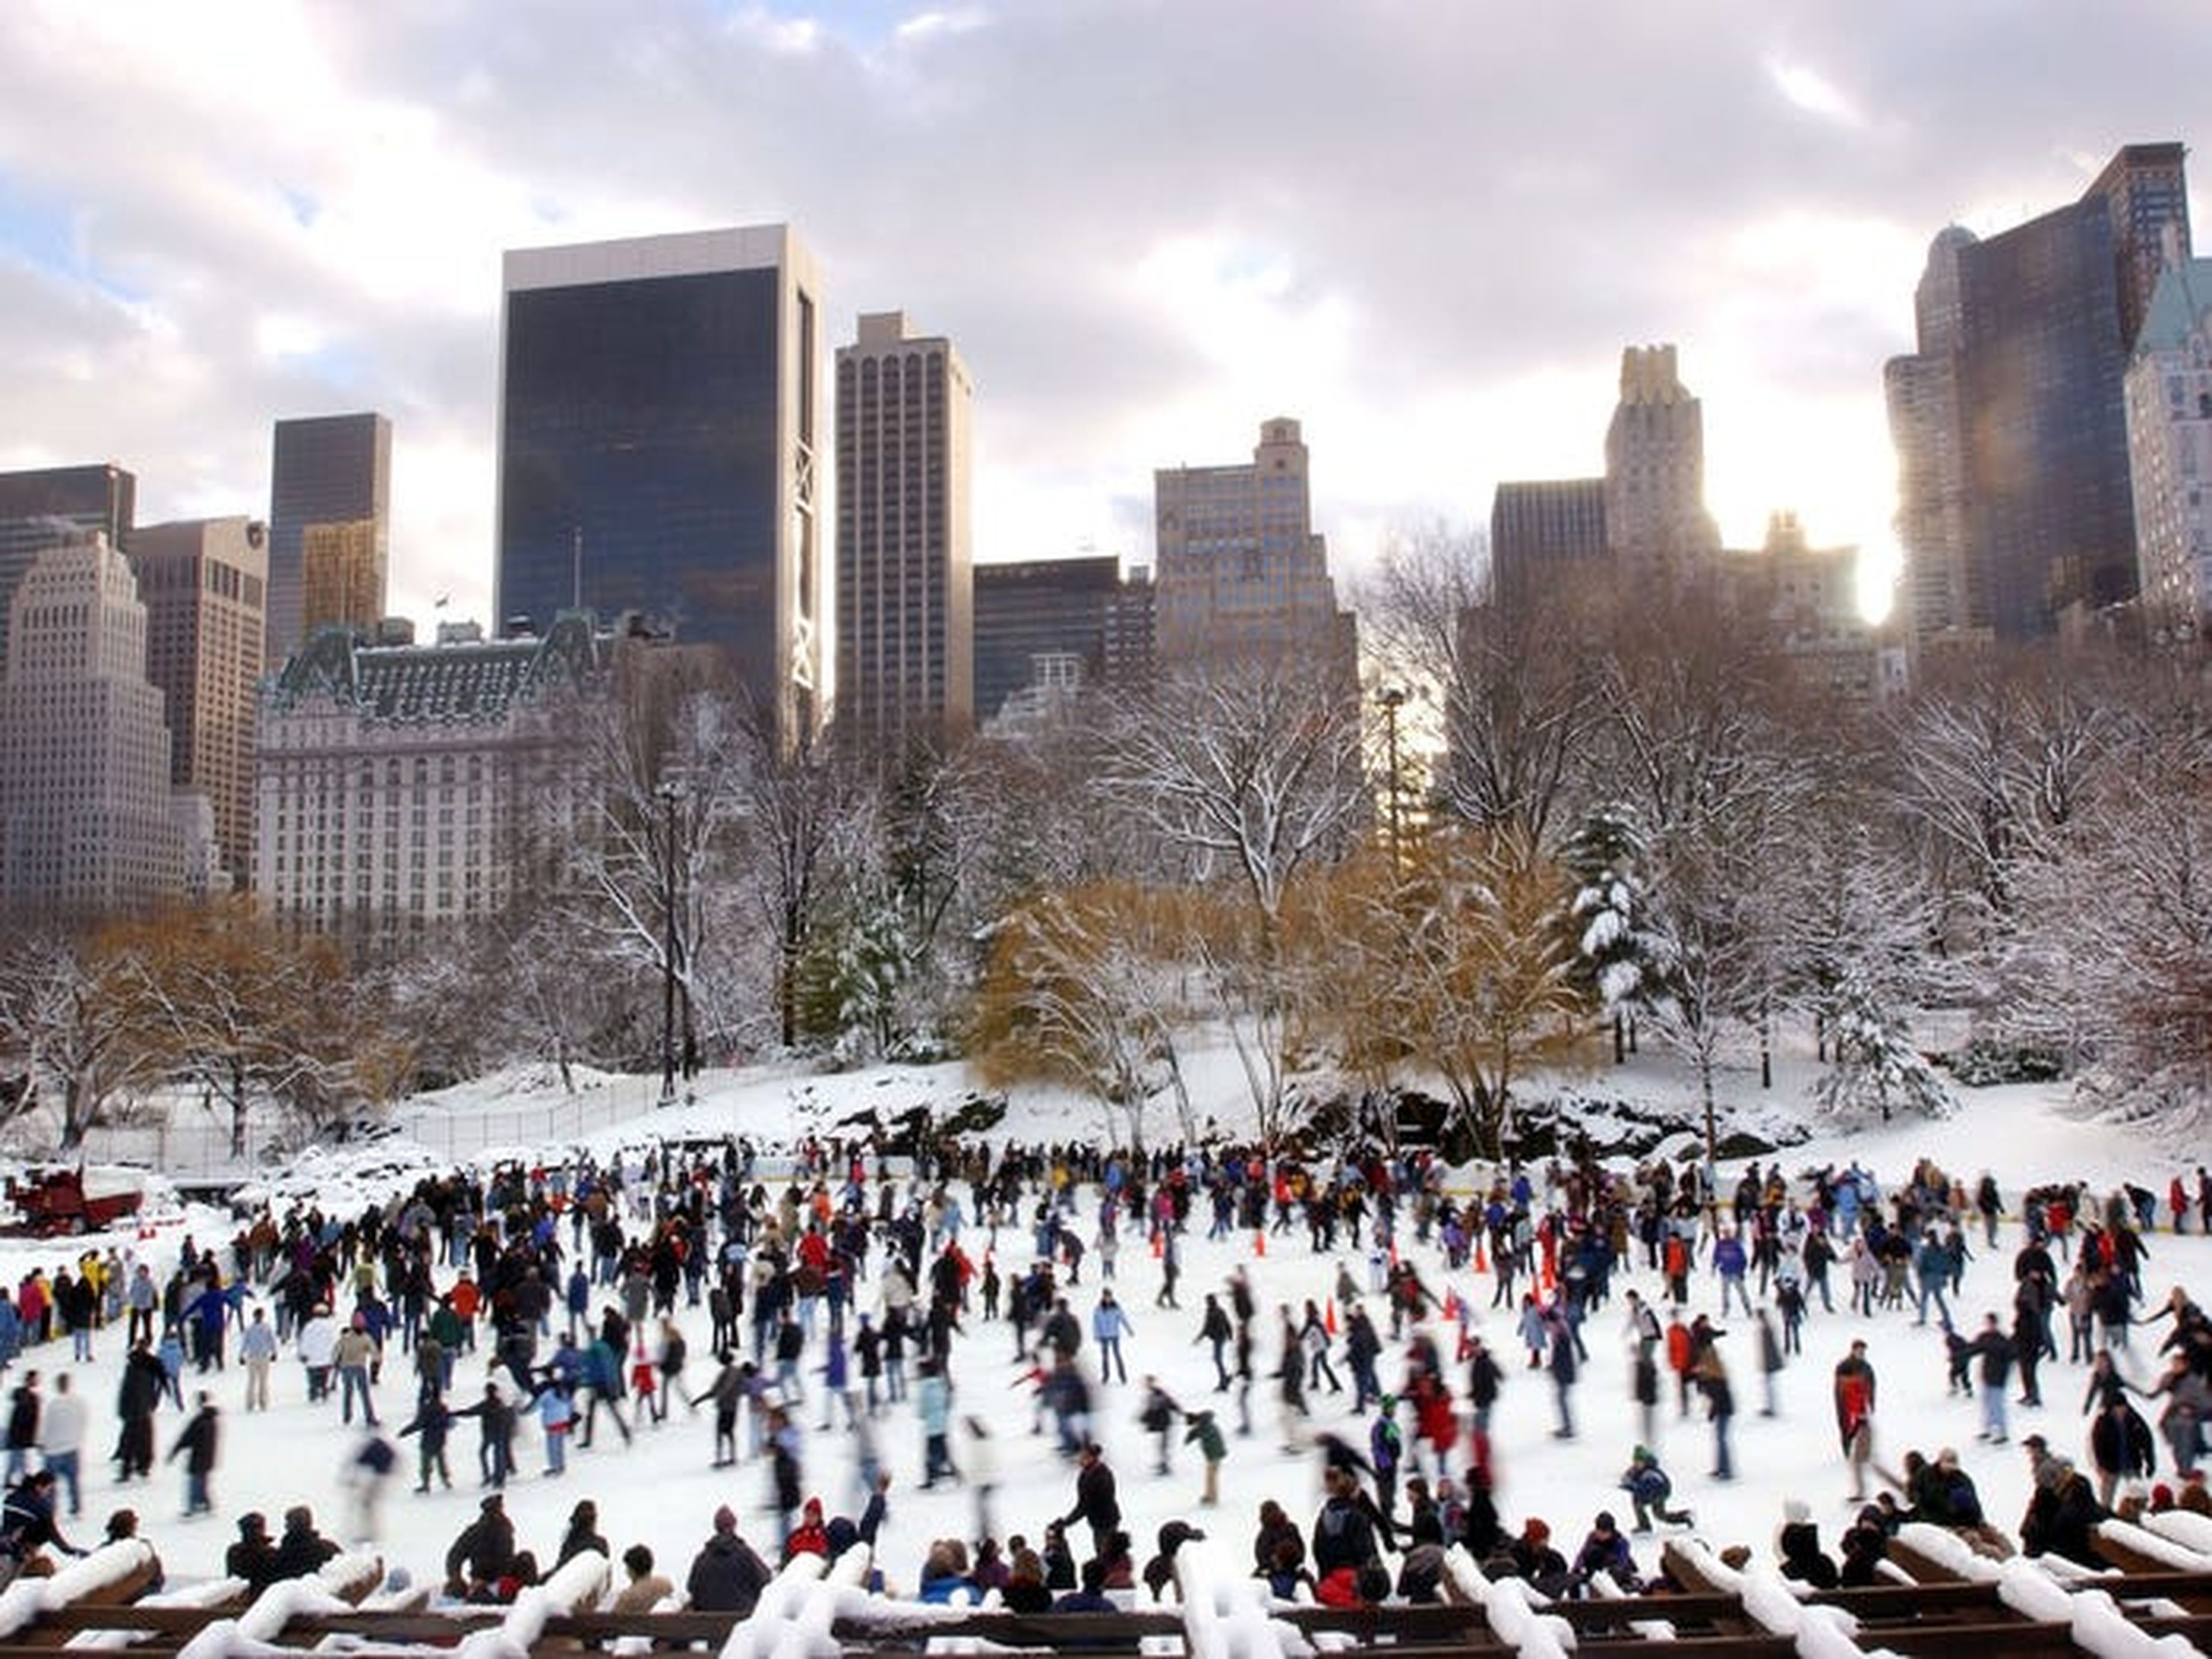 Las ventas de las operaciones de admisión a Central Park Carousel y la pista de patinaje sobre hielo combinadas suman más de 11 millones en ingresos anuales